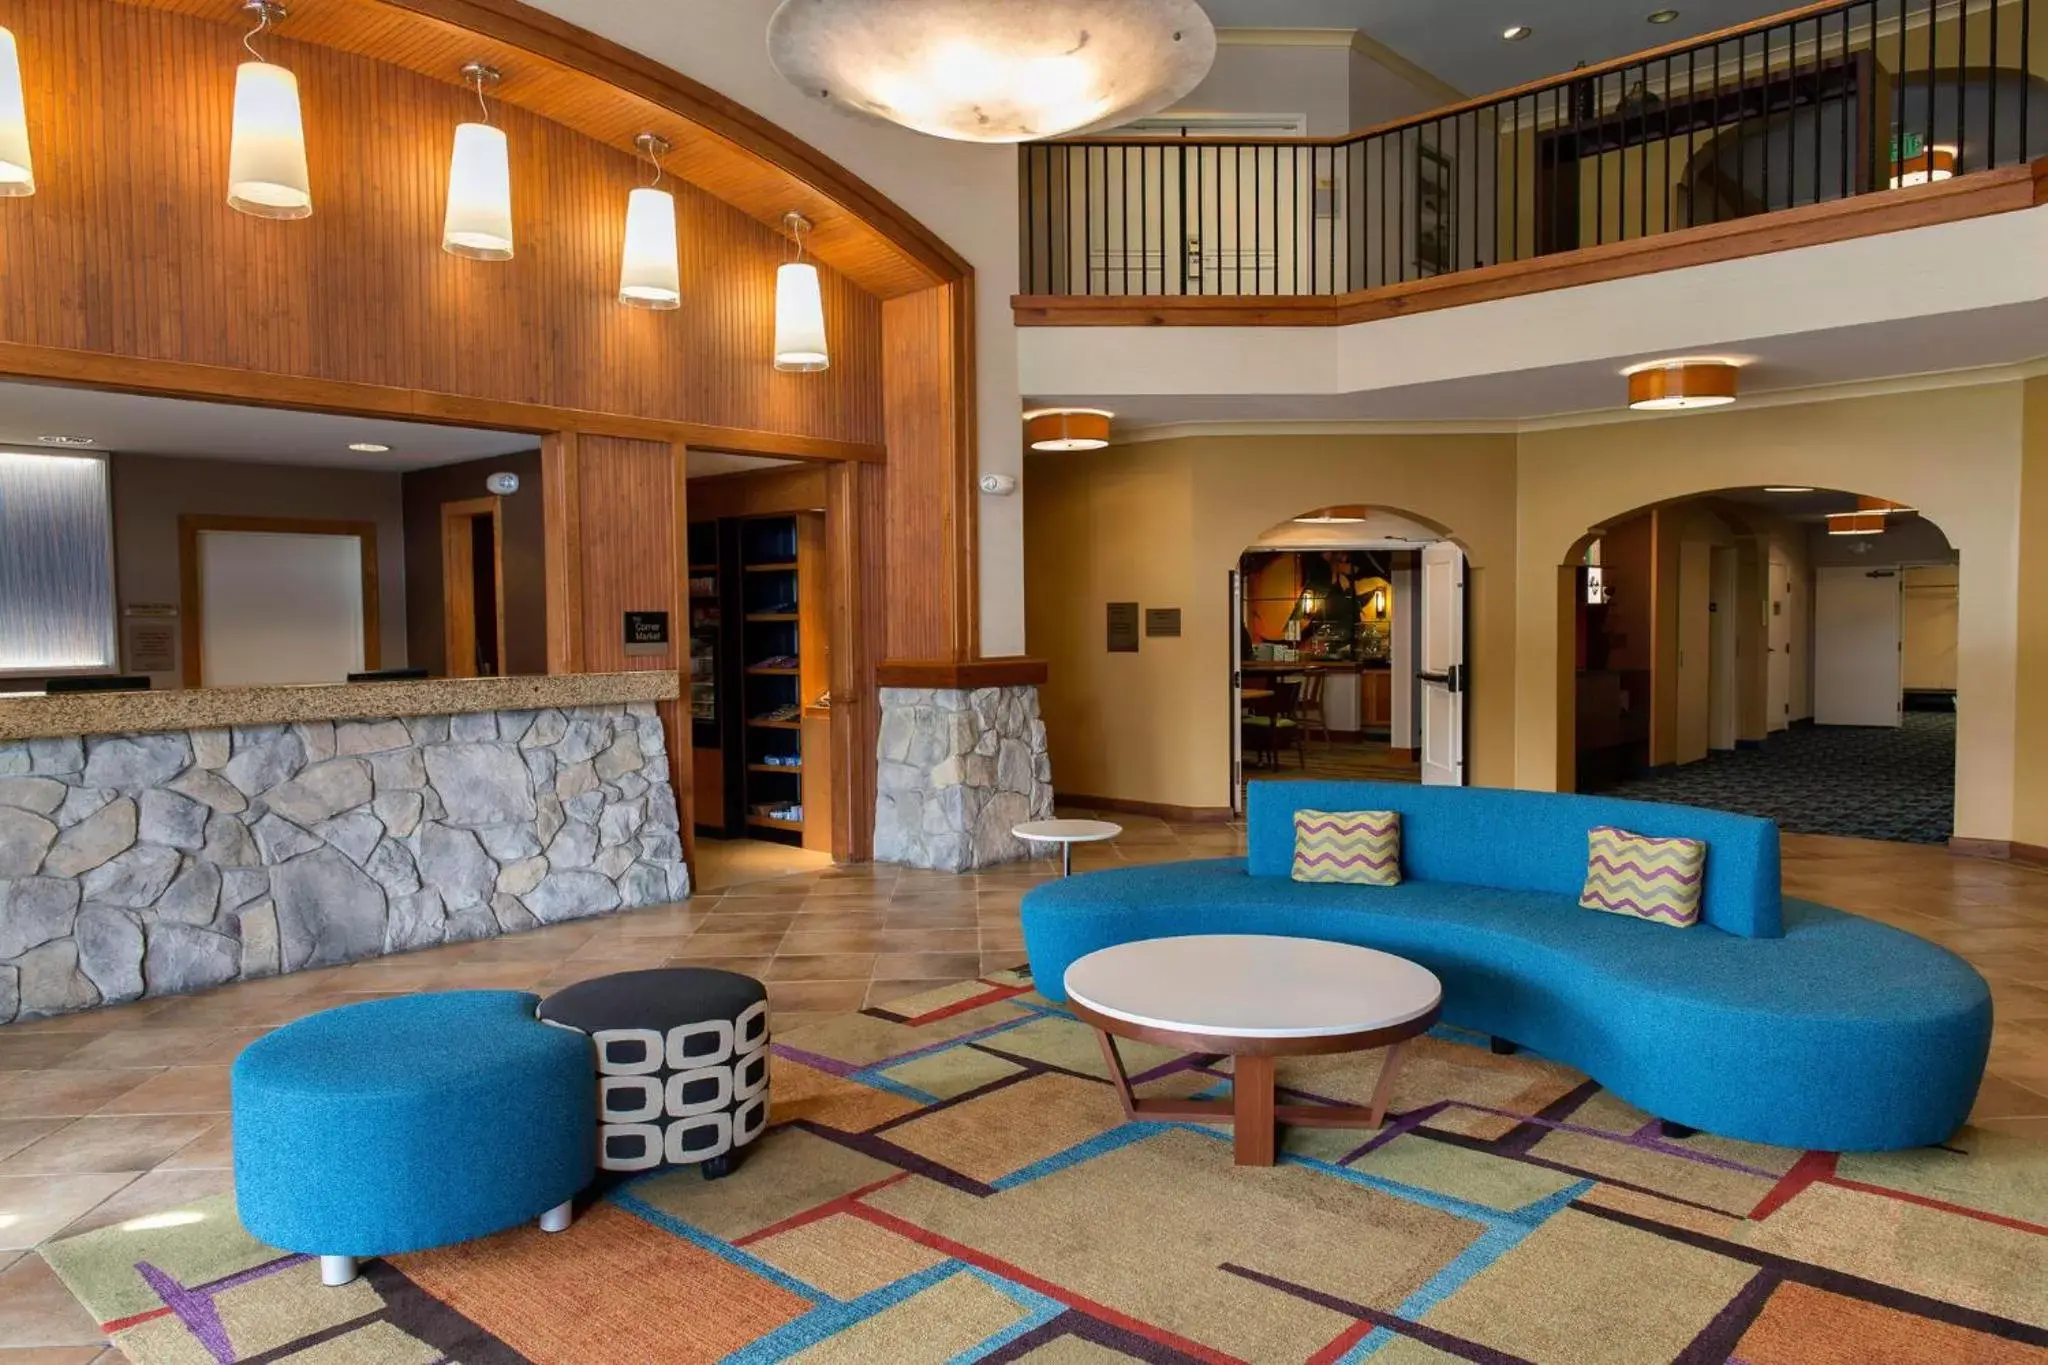 Lobby or reception, Lobby/Reception in Fairfield Inn and Suites Santa Rosa Sebastopol